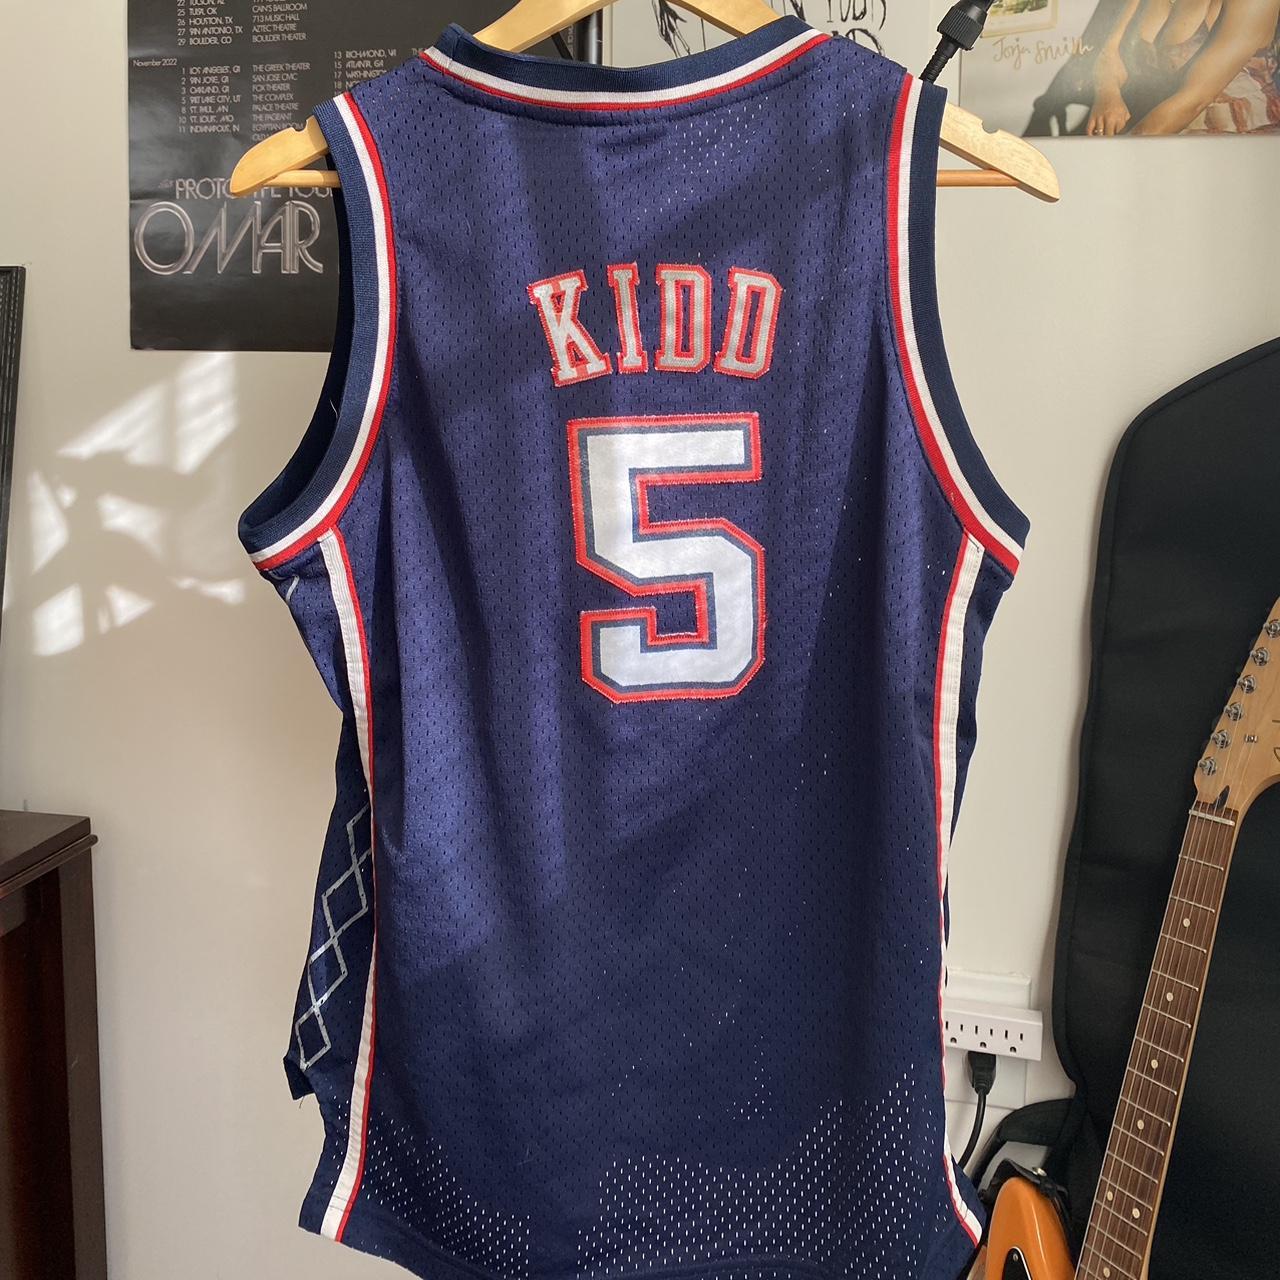 Reebok, Shirts, Jason Kidd New Jersey Nets Jersey